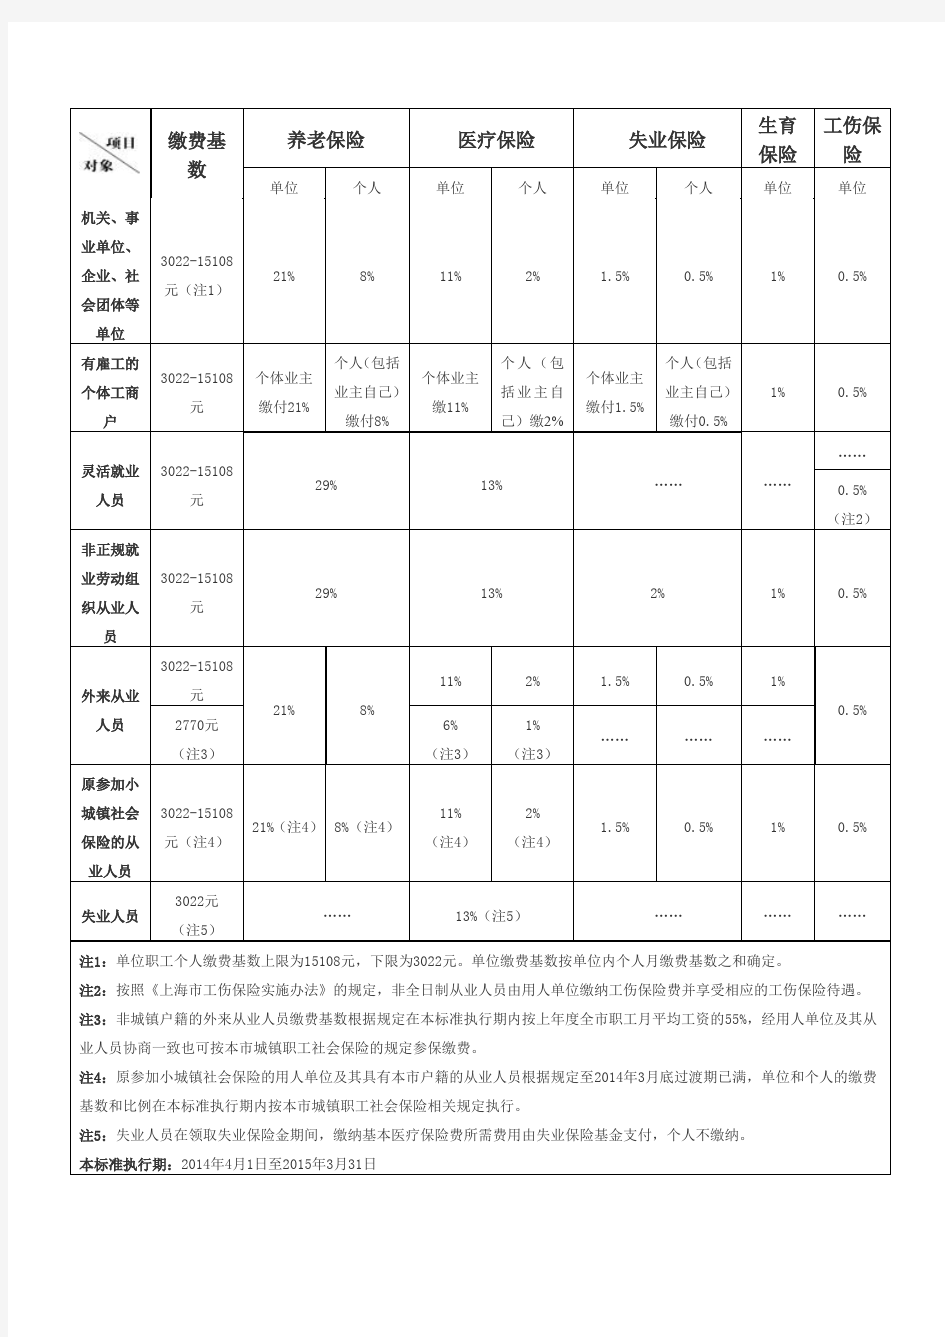 2014年上海市最新社保缴费基数明细表